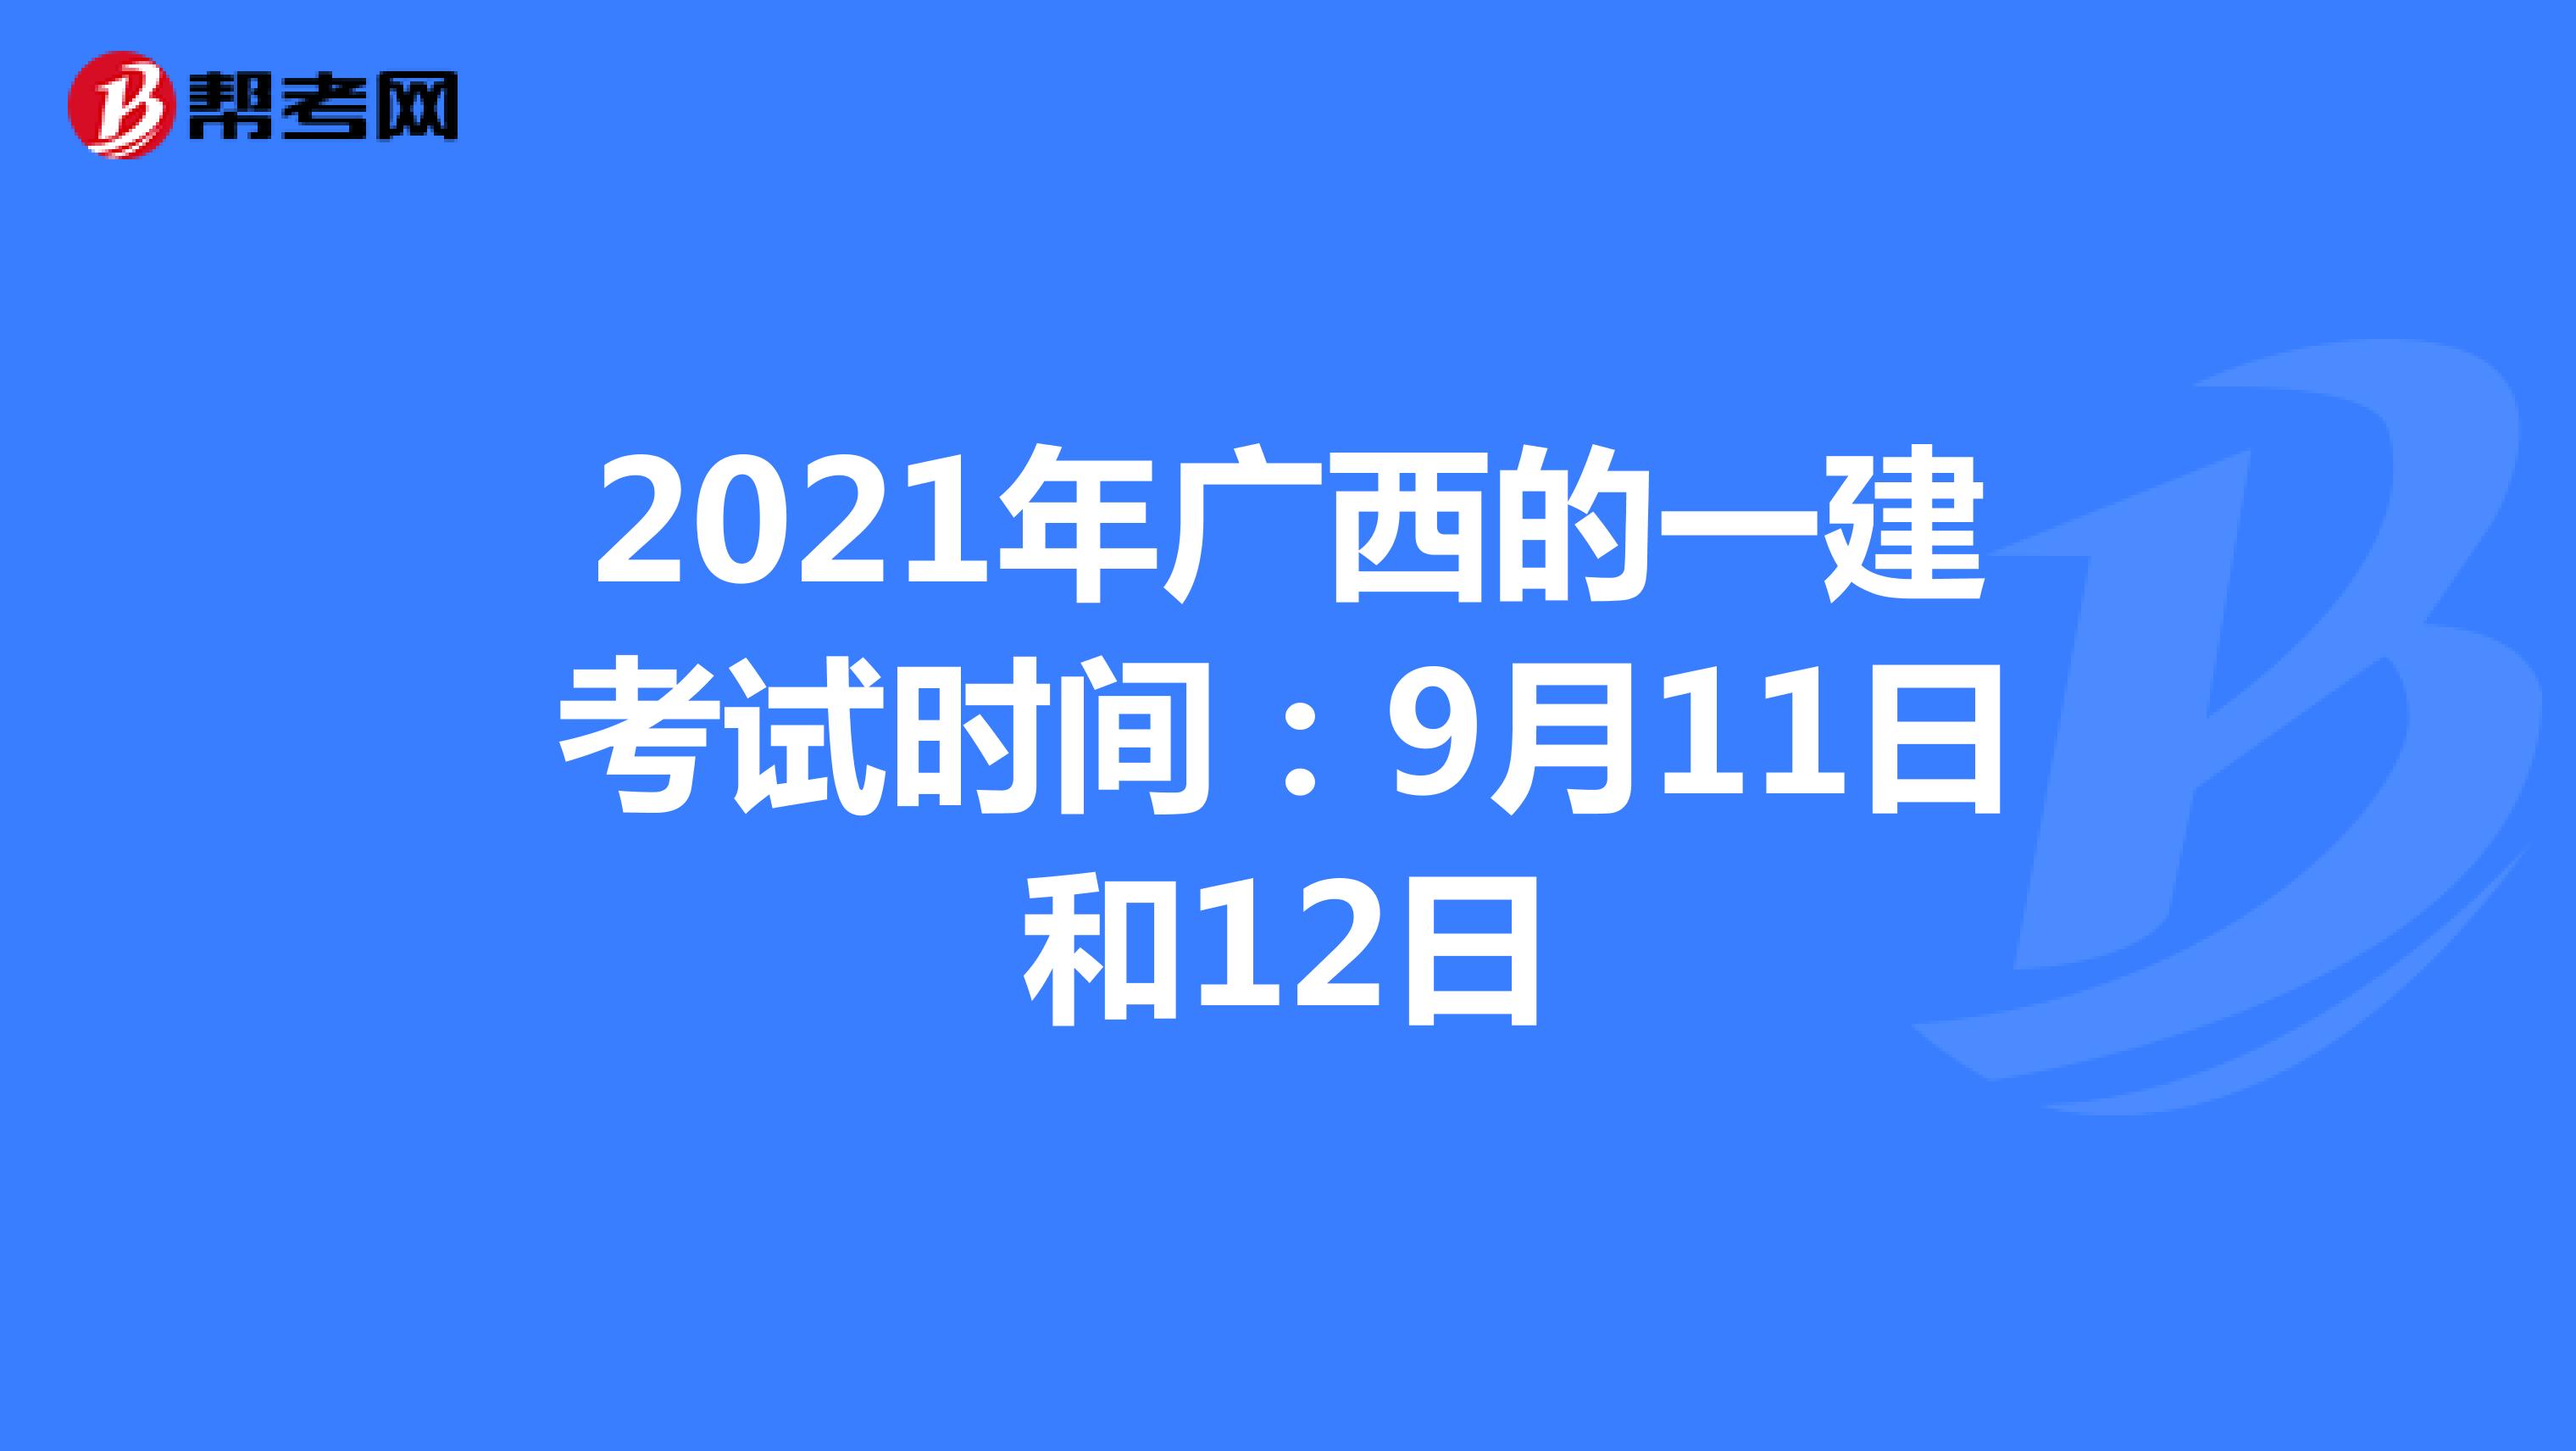 2021年广西的一建考试时间：9月11日和12日